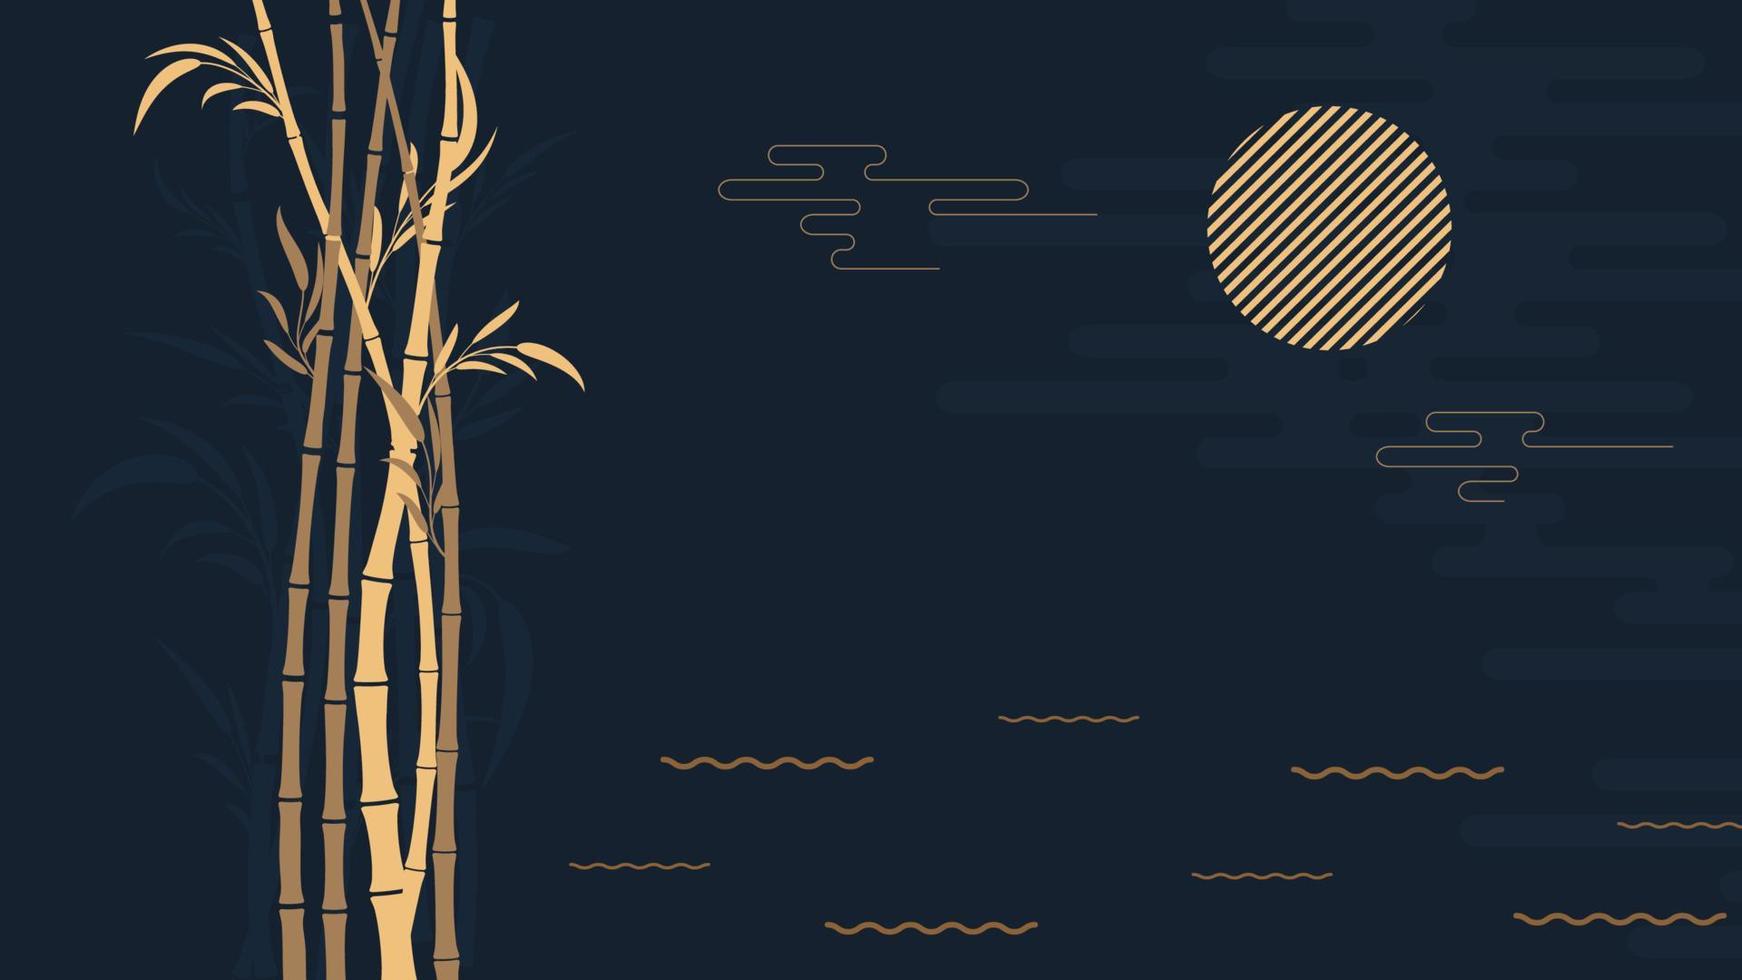 abstrakt stiliserad mörk bakgrund bambuskog på natten med moon.template för affisch, vykort, flygblad .vector illustration vektor